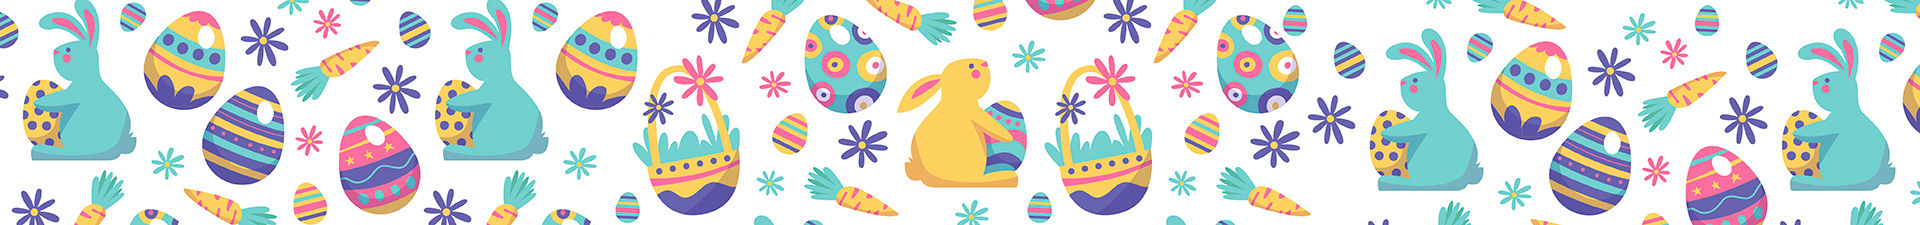 Paște: ouă decorative și decorațiuni